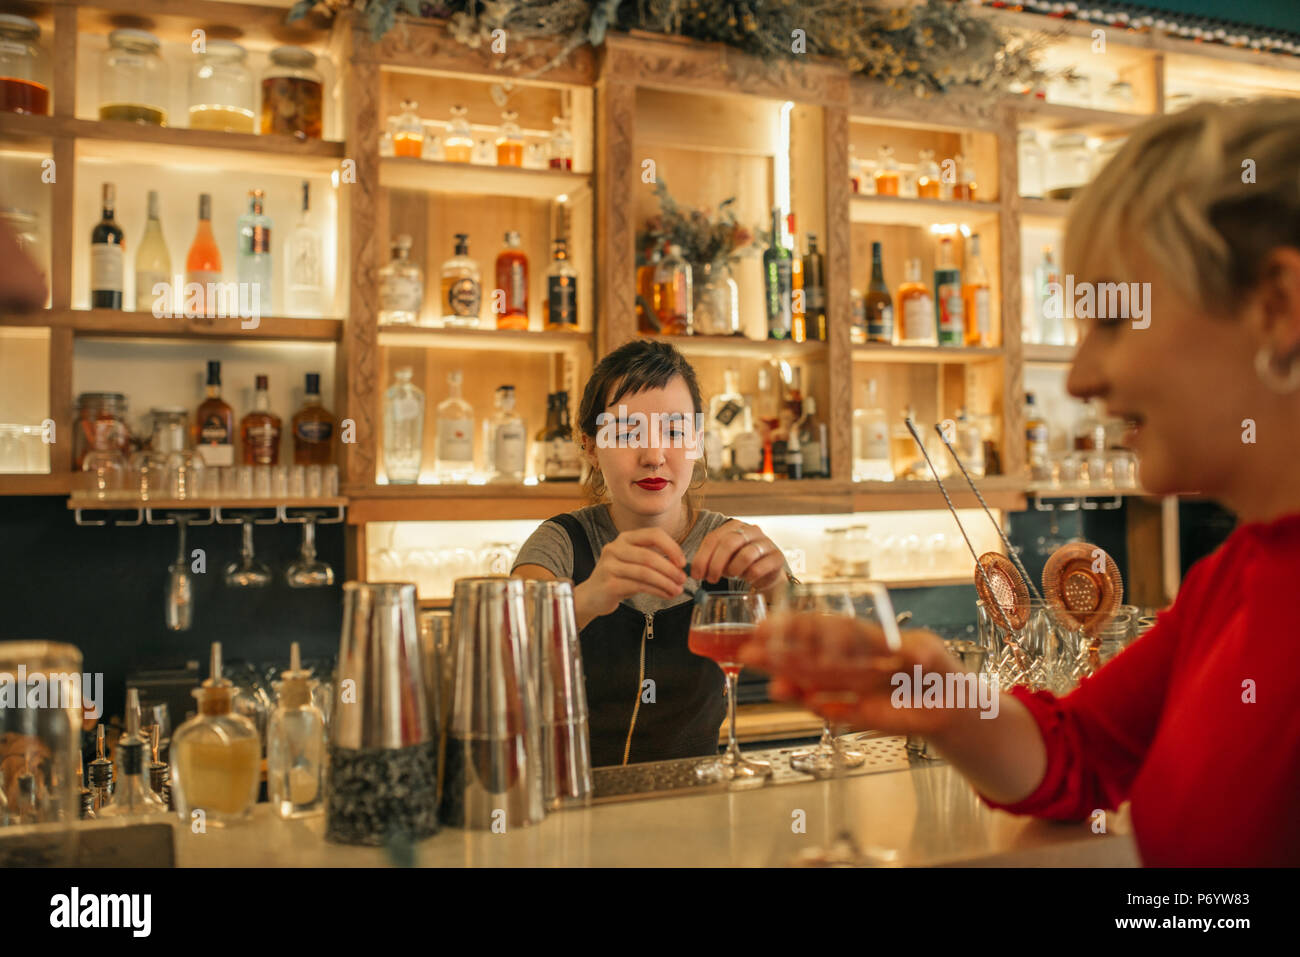 Las hembras jóvenes barman haciendo cócteles detrás de un mostrador de bar Foto de stock